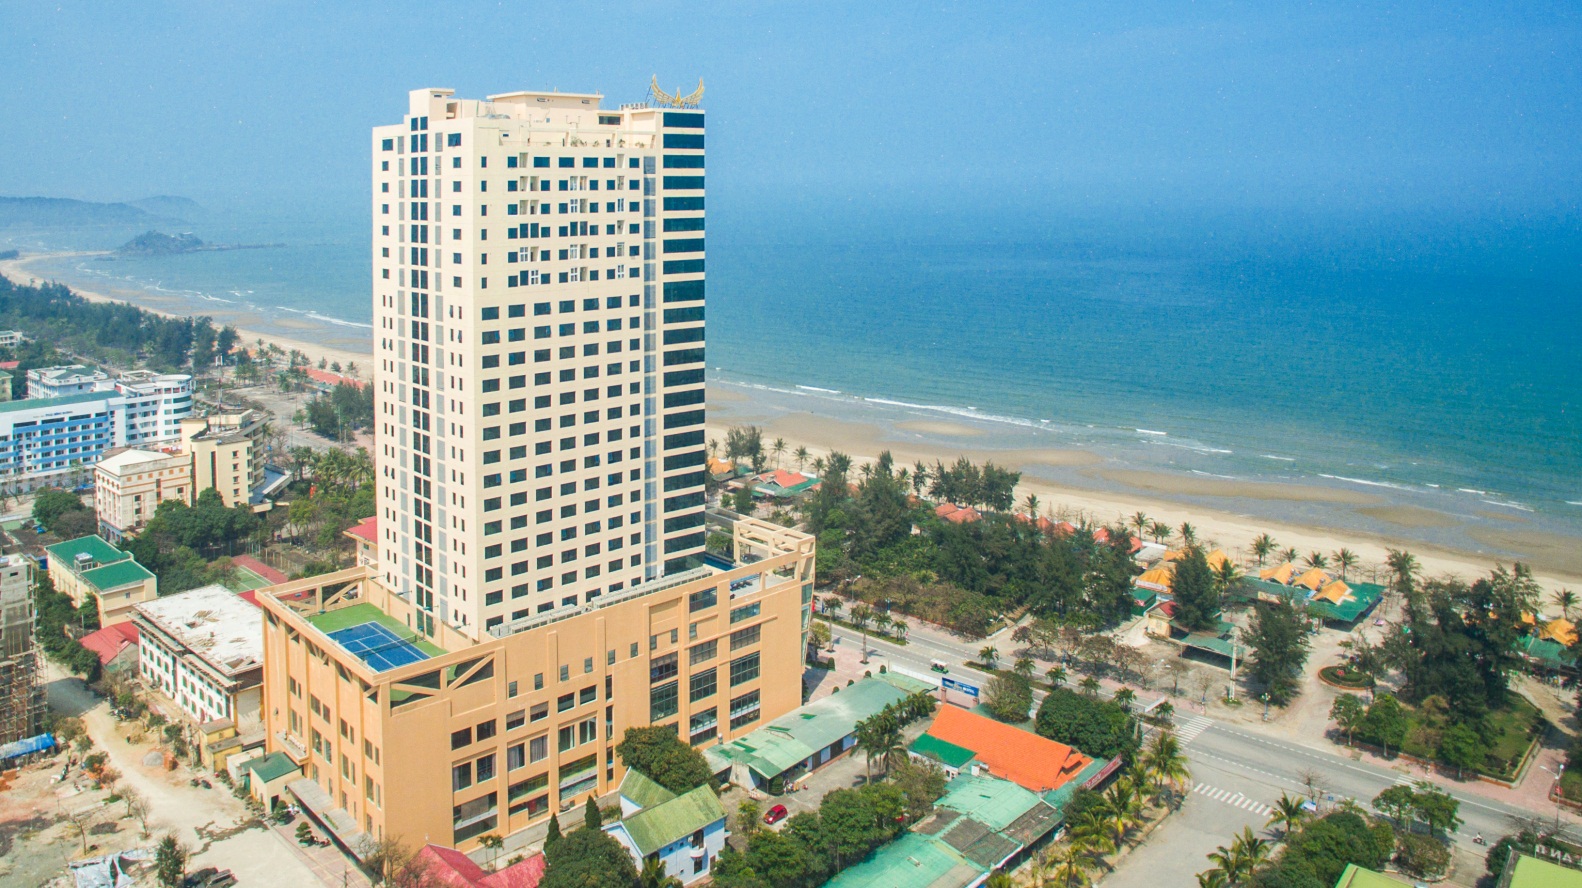 Vui trọn mùa hè với ưu đãi lên đến 70% tại khách sạn Mường Thanh - Ảnh 2.